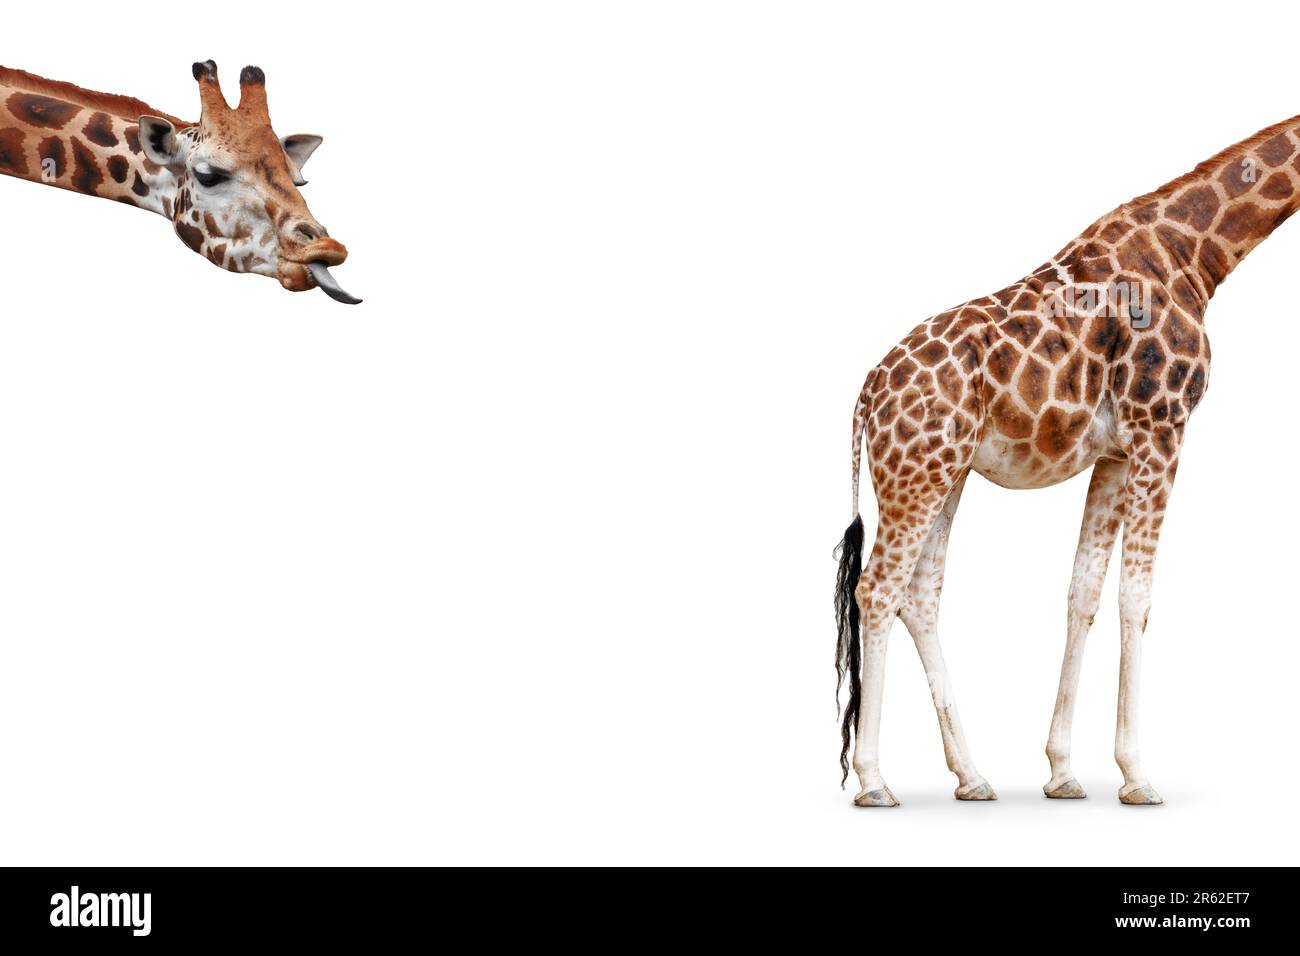 Lustiges Giraffen-Konzept mit separatem Kopf und Körper isoliert auf weißem Hintergrund. Stockfoto